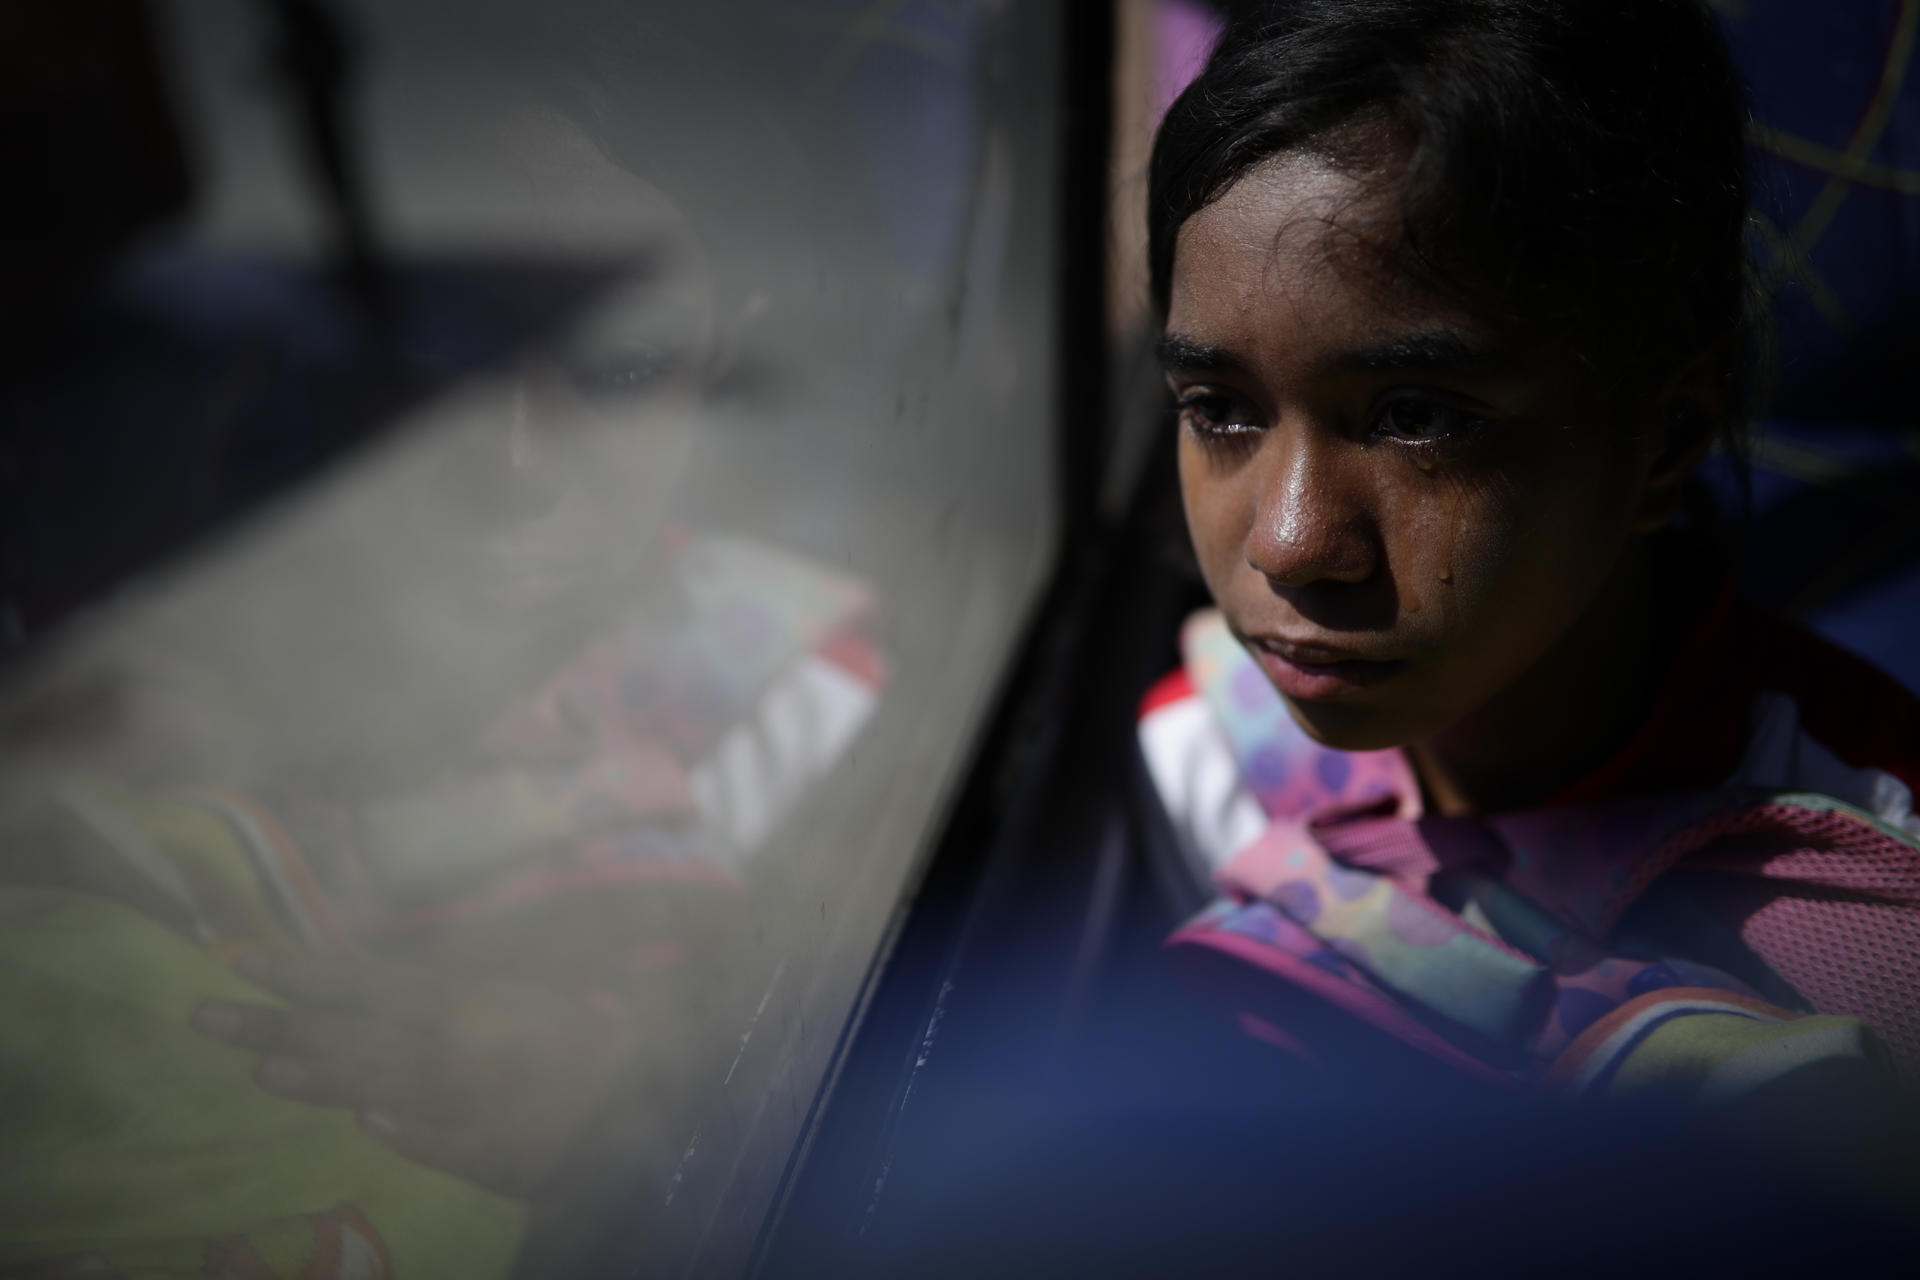 Yelismar Chourio La Rosa, una migrante venezolana de 15 años, llora desde el bus que la trasladará hacia Nicaragua hoy, en Paso Canoas, población fronteriza entre Panamá y Costa Rica. EFE/Bienvenido Velasco